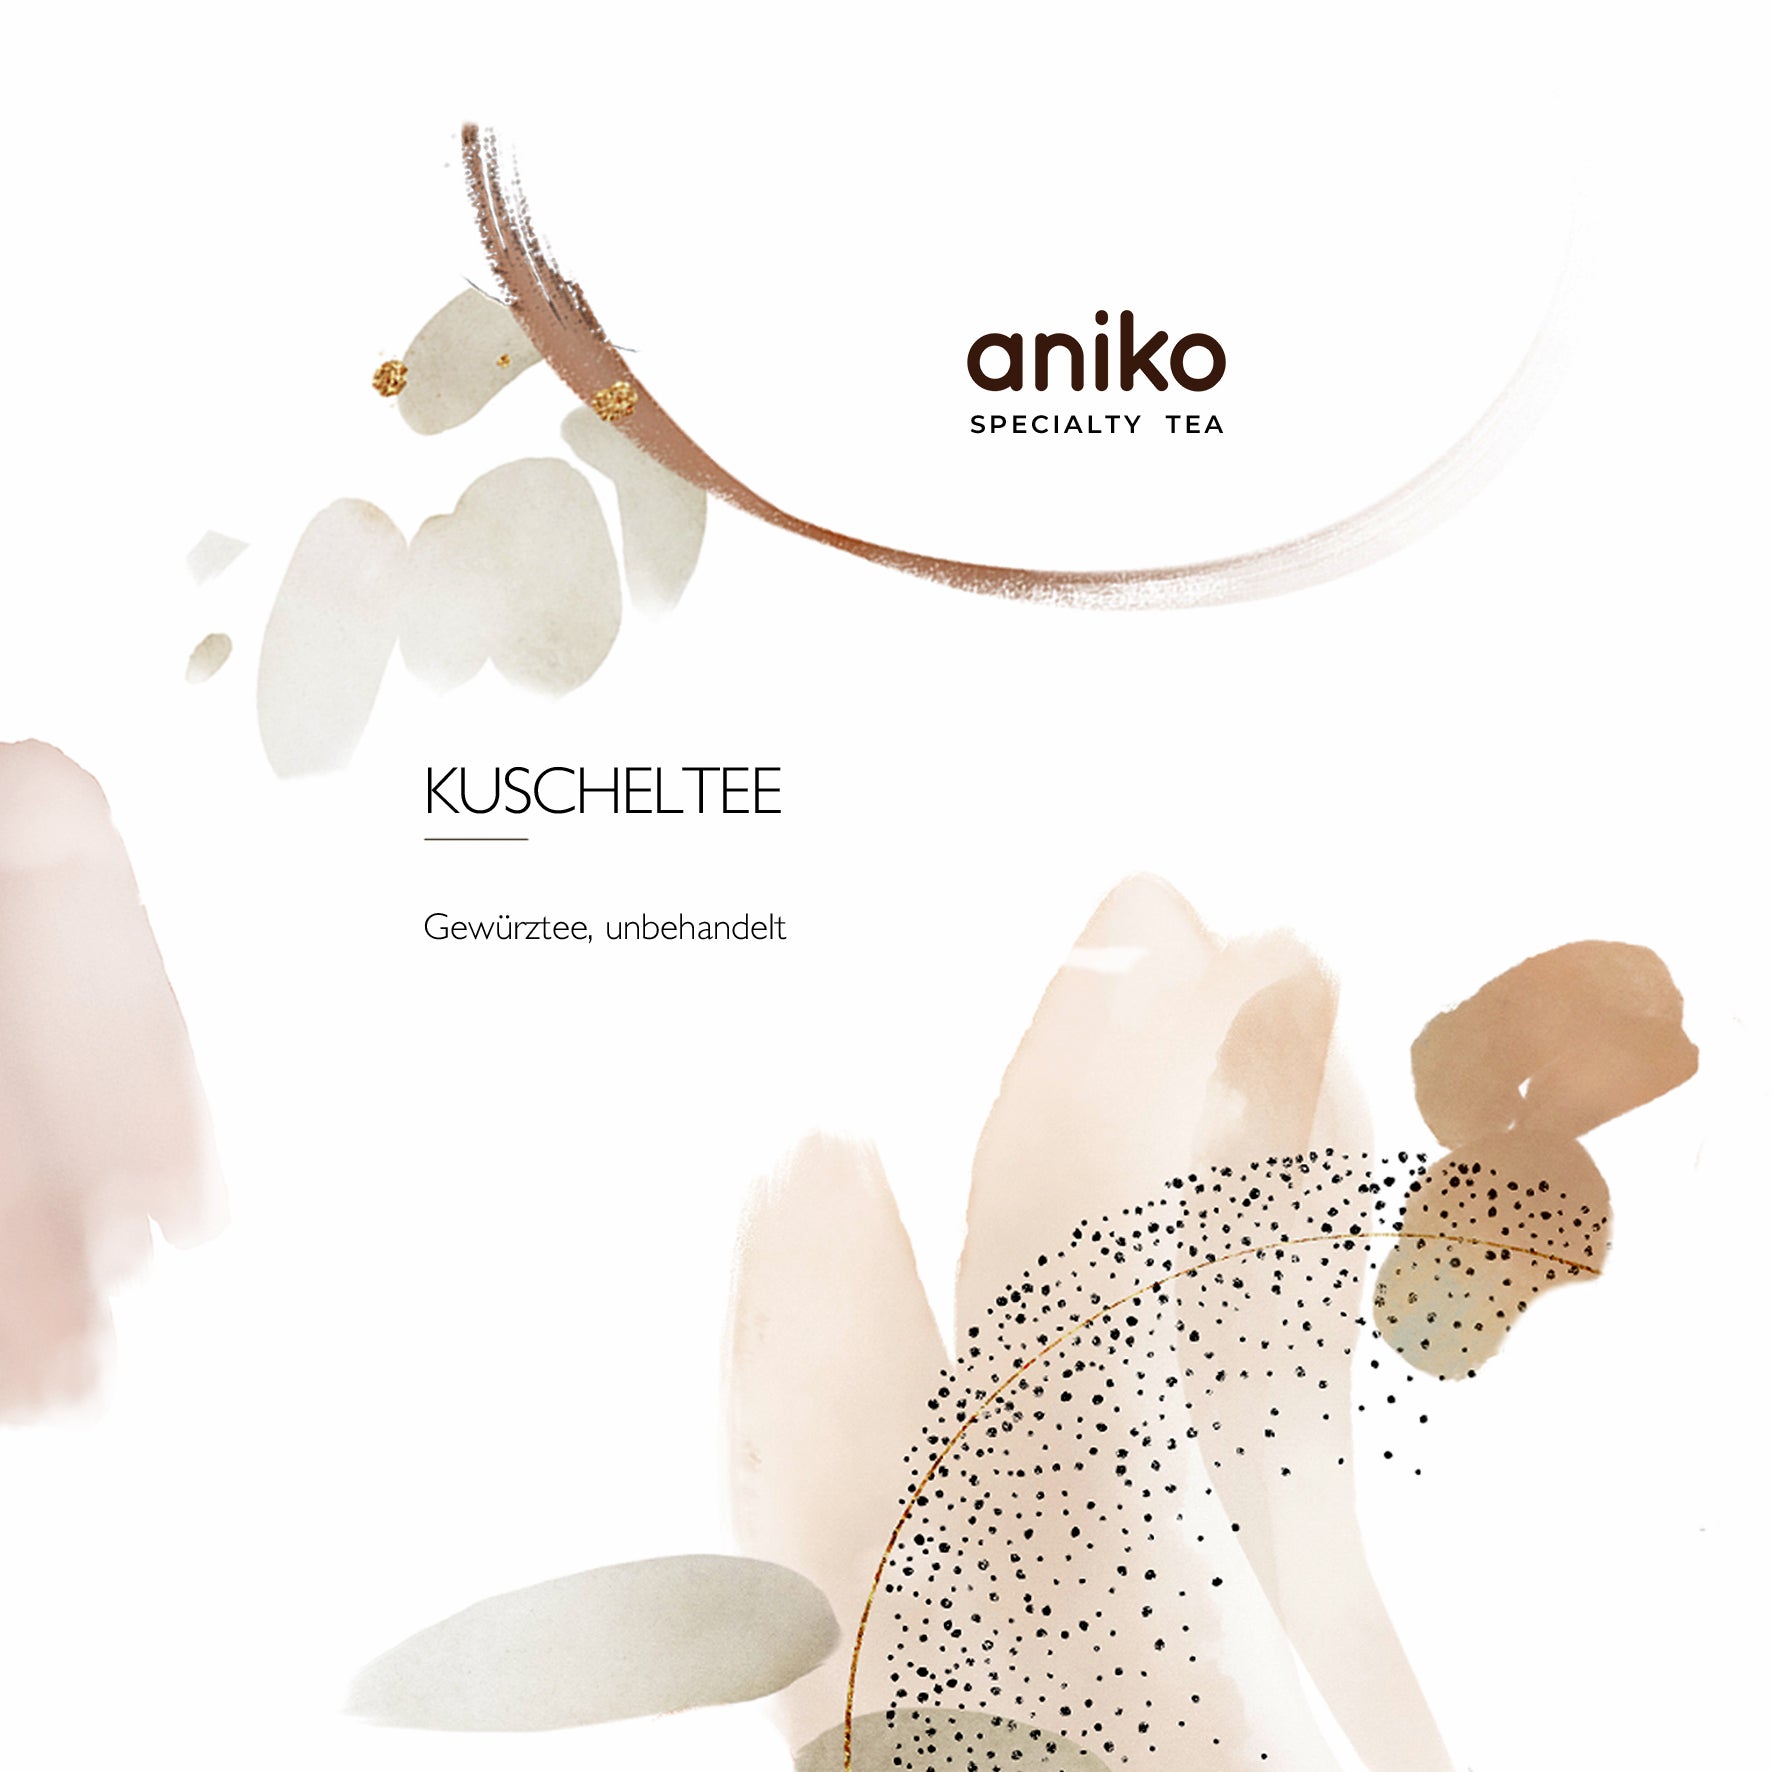 aniko Specialty Tea I Kuscheltee